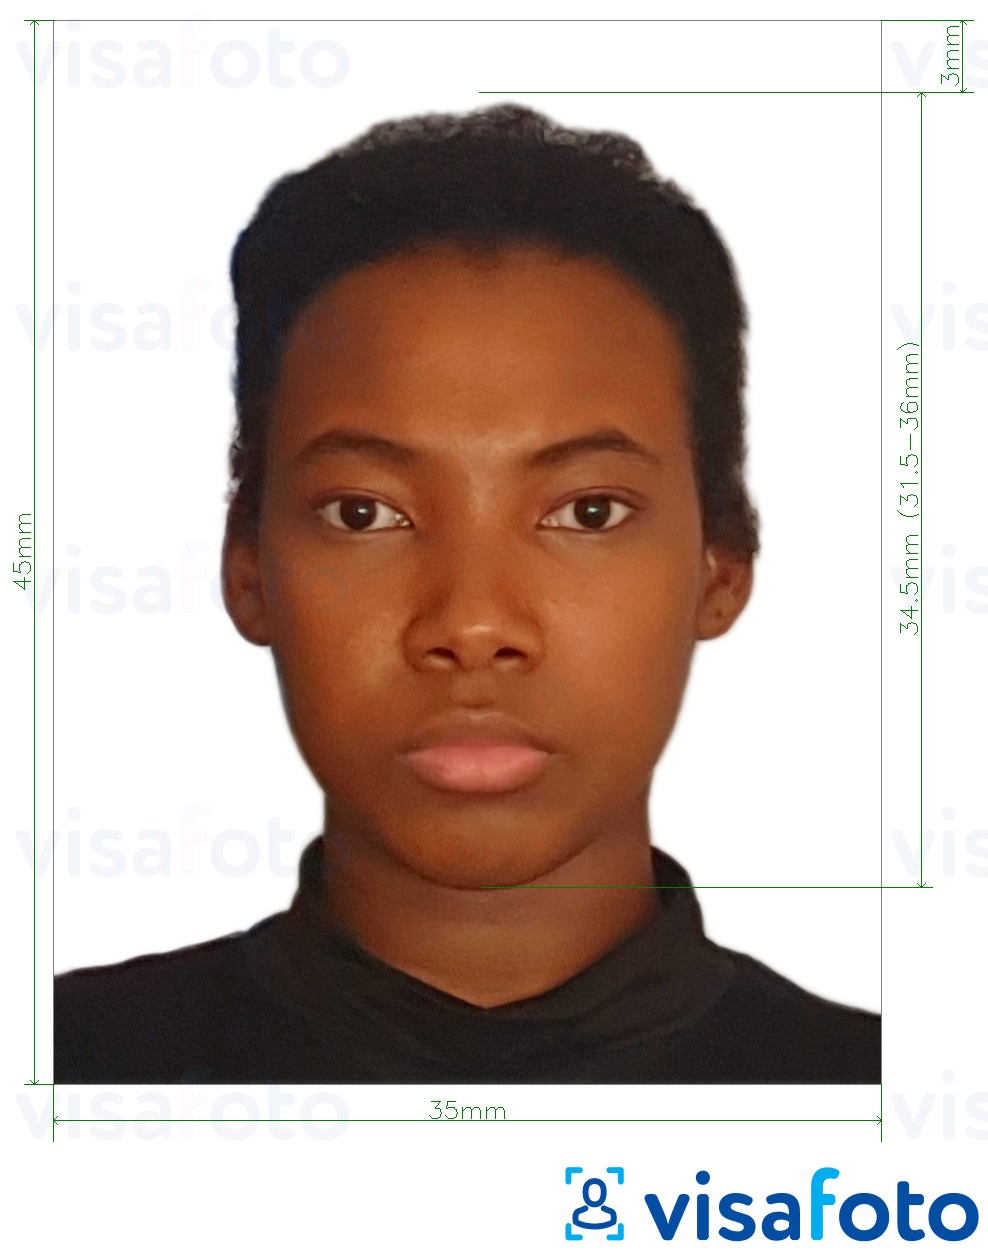 Contoh foto untuk Pasport Guyana 45x35 mm (1.77 x 1.38 inci) dengan spesifikasi saiz yang tepat.